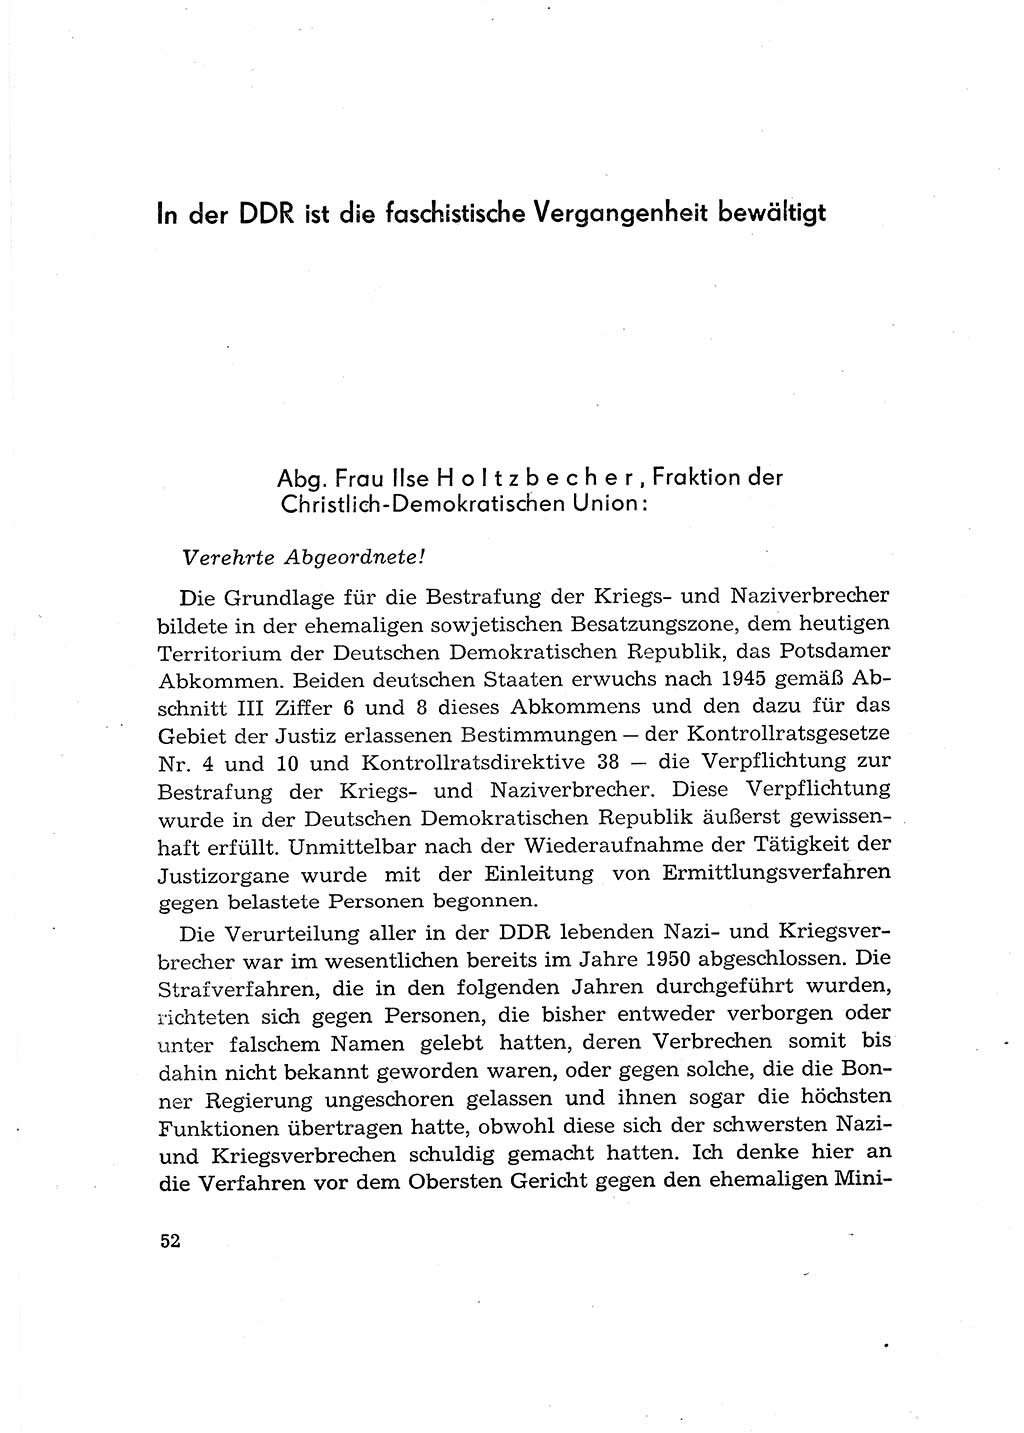 Bestrafung der Nazi- und Kriegsverbrecher [Deutsche Demokratische Republik (DDR)] 1964, Seite 52 (Bestr. Nazi-Kr.-Verbr. DDR 1964, S. 52)